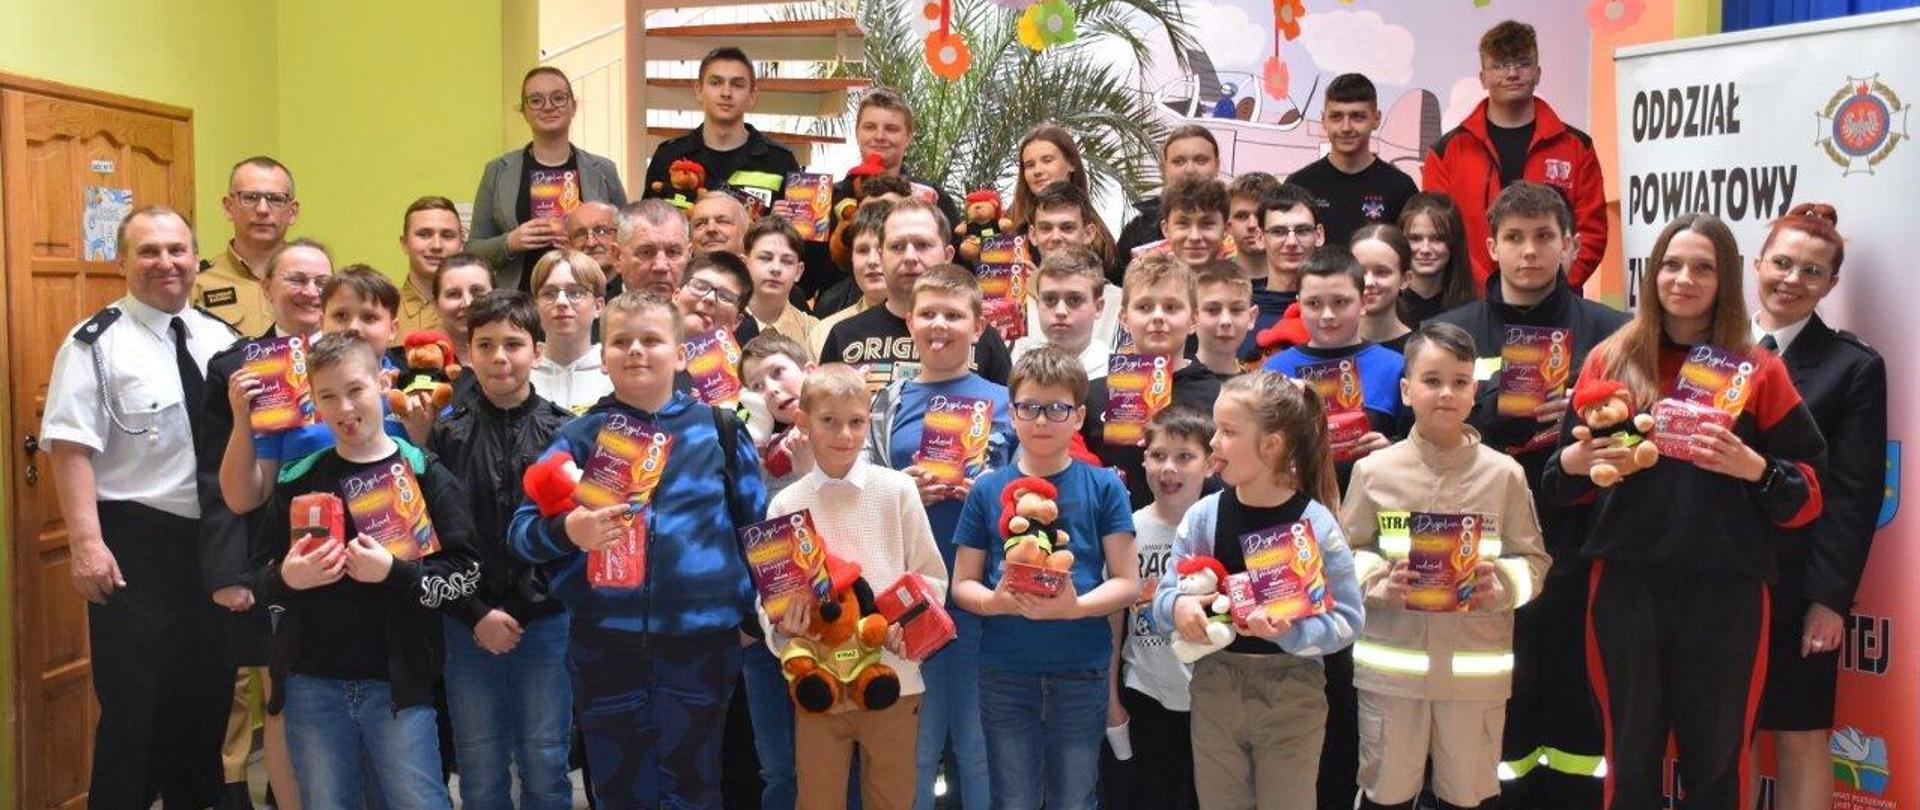 Uczestnicy finału eliminacji powiatowych Ogólnopolskiego Turnieju Wiedzy Pożarniczej „Młodzież zapobiega pożarom”, wraz z organizatorami i opiekunami